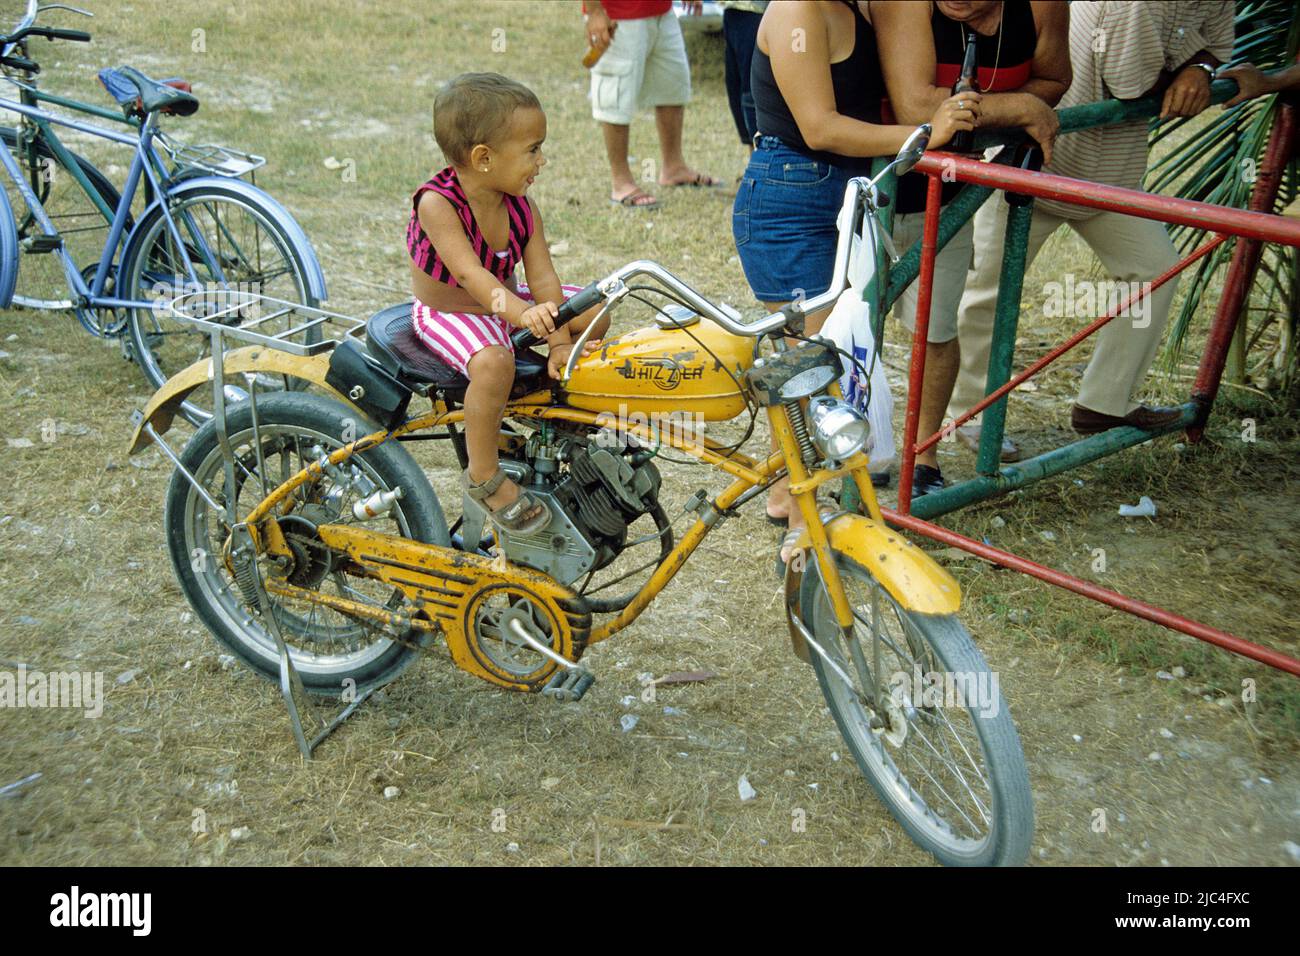 Petit garçon cubain assis sur un vieux Whizzer moto, Fiesta, fête, Sainte-Lucie, Cuba, Caraïbes Banque D'Images